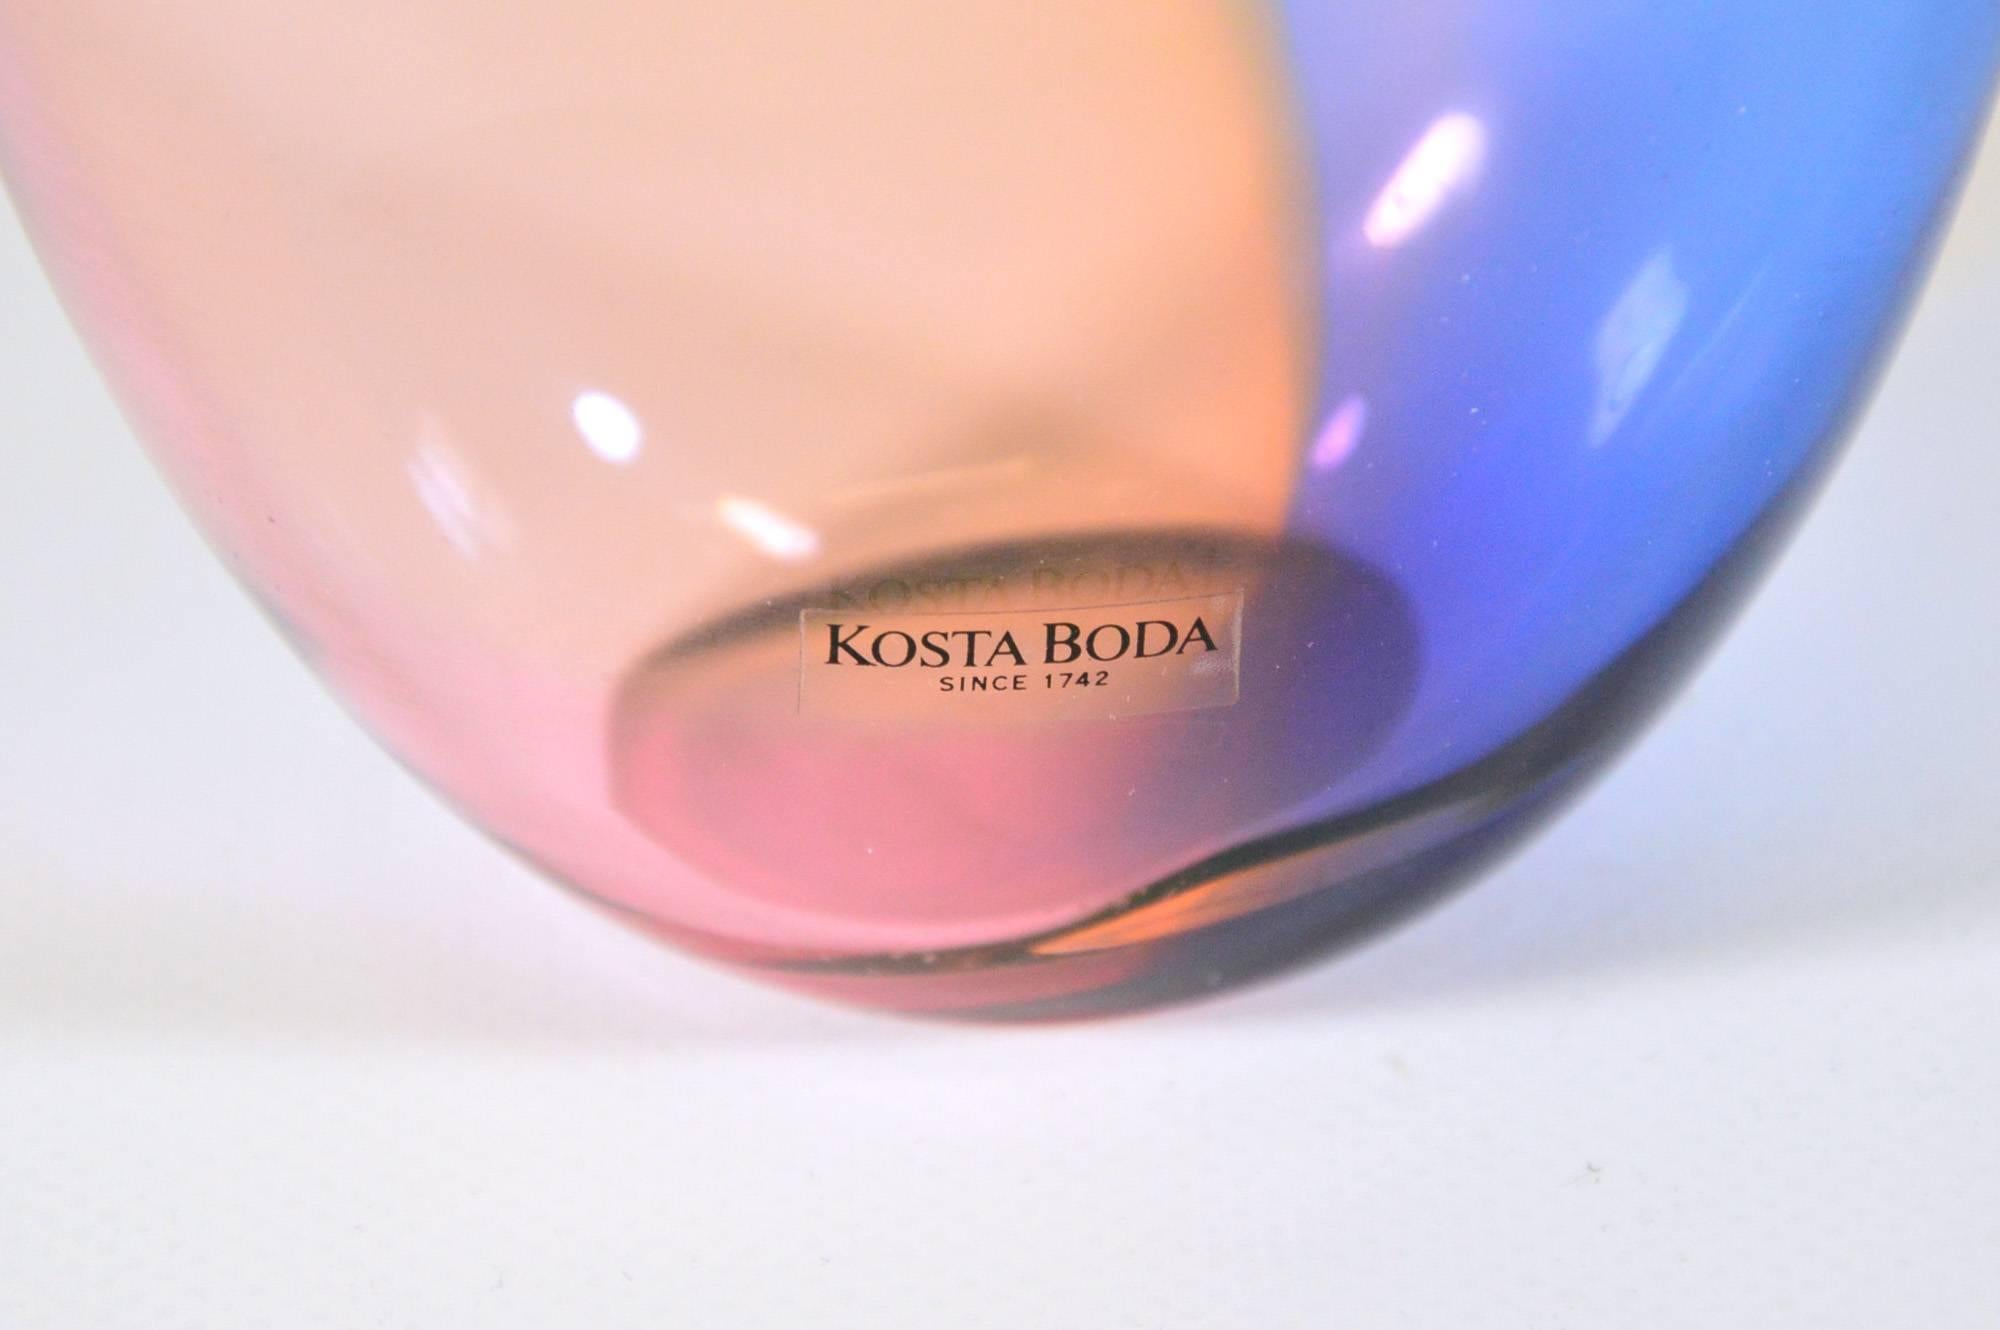 20th Century Fidji Glass Bottle by Kjell Engman for Kosta Boda